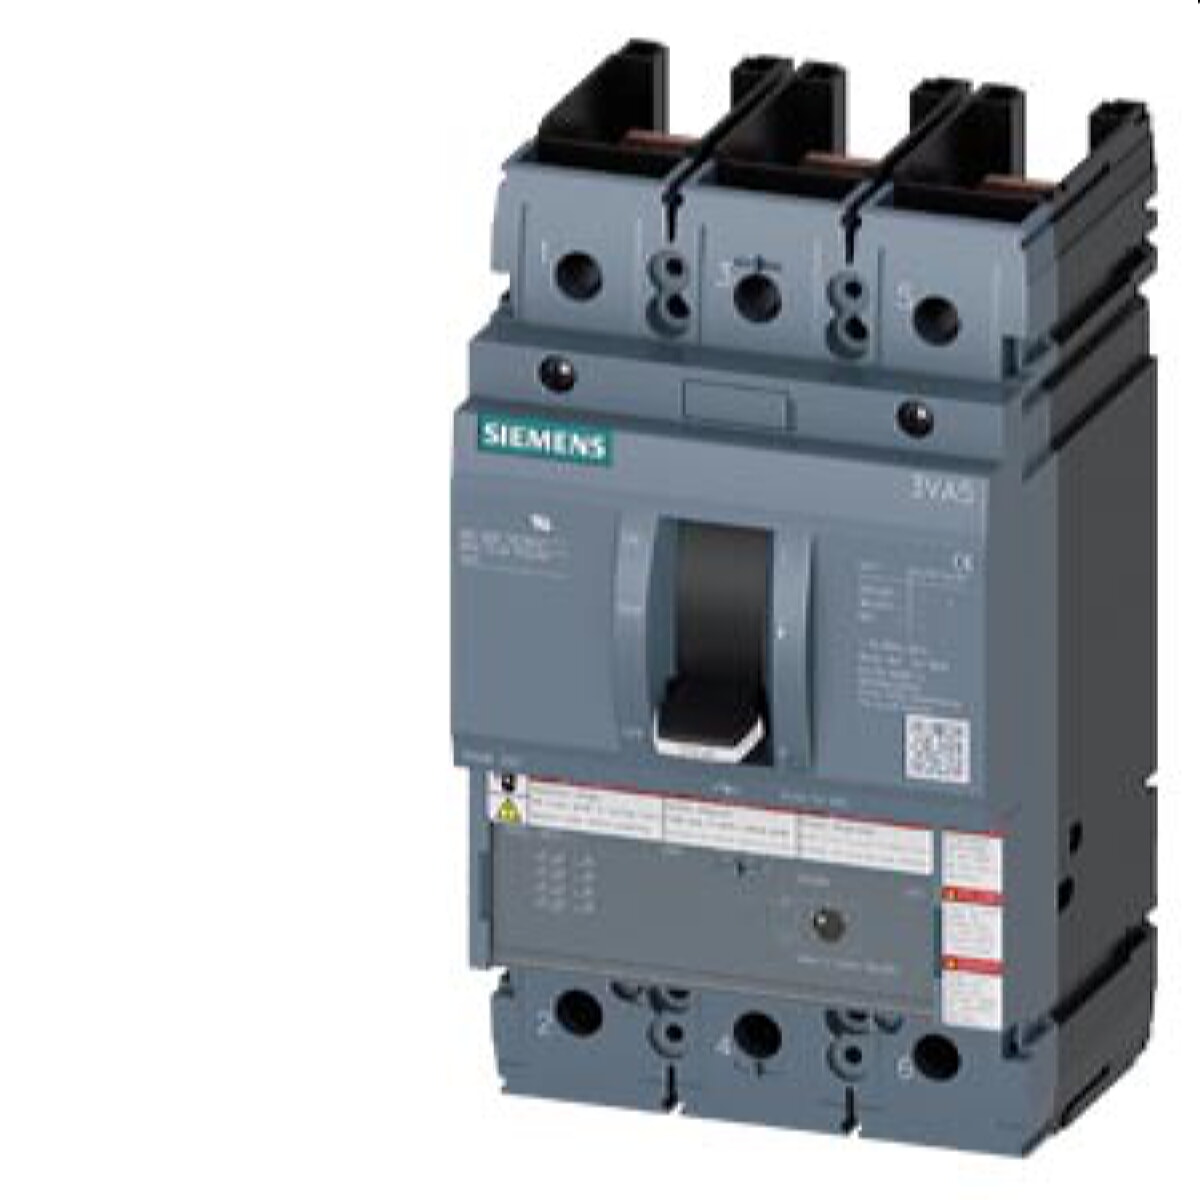 Siemens Leistungsschalter 3VA5 UL FRAME 250 TM120M 200A 3VA5220-1MU31-0AA0